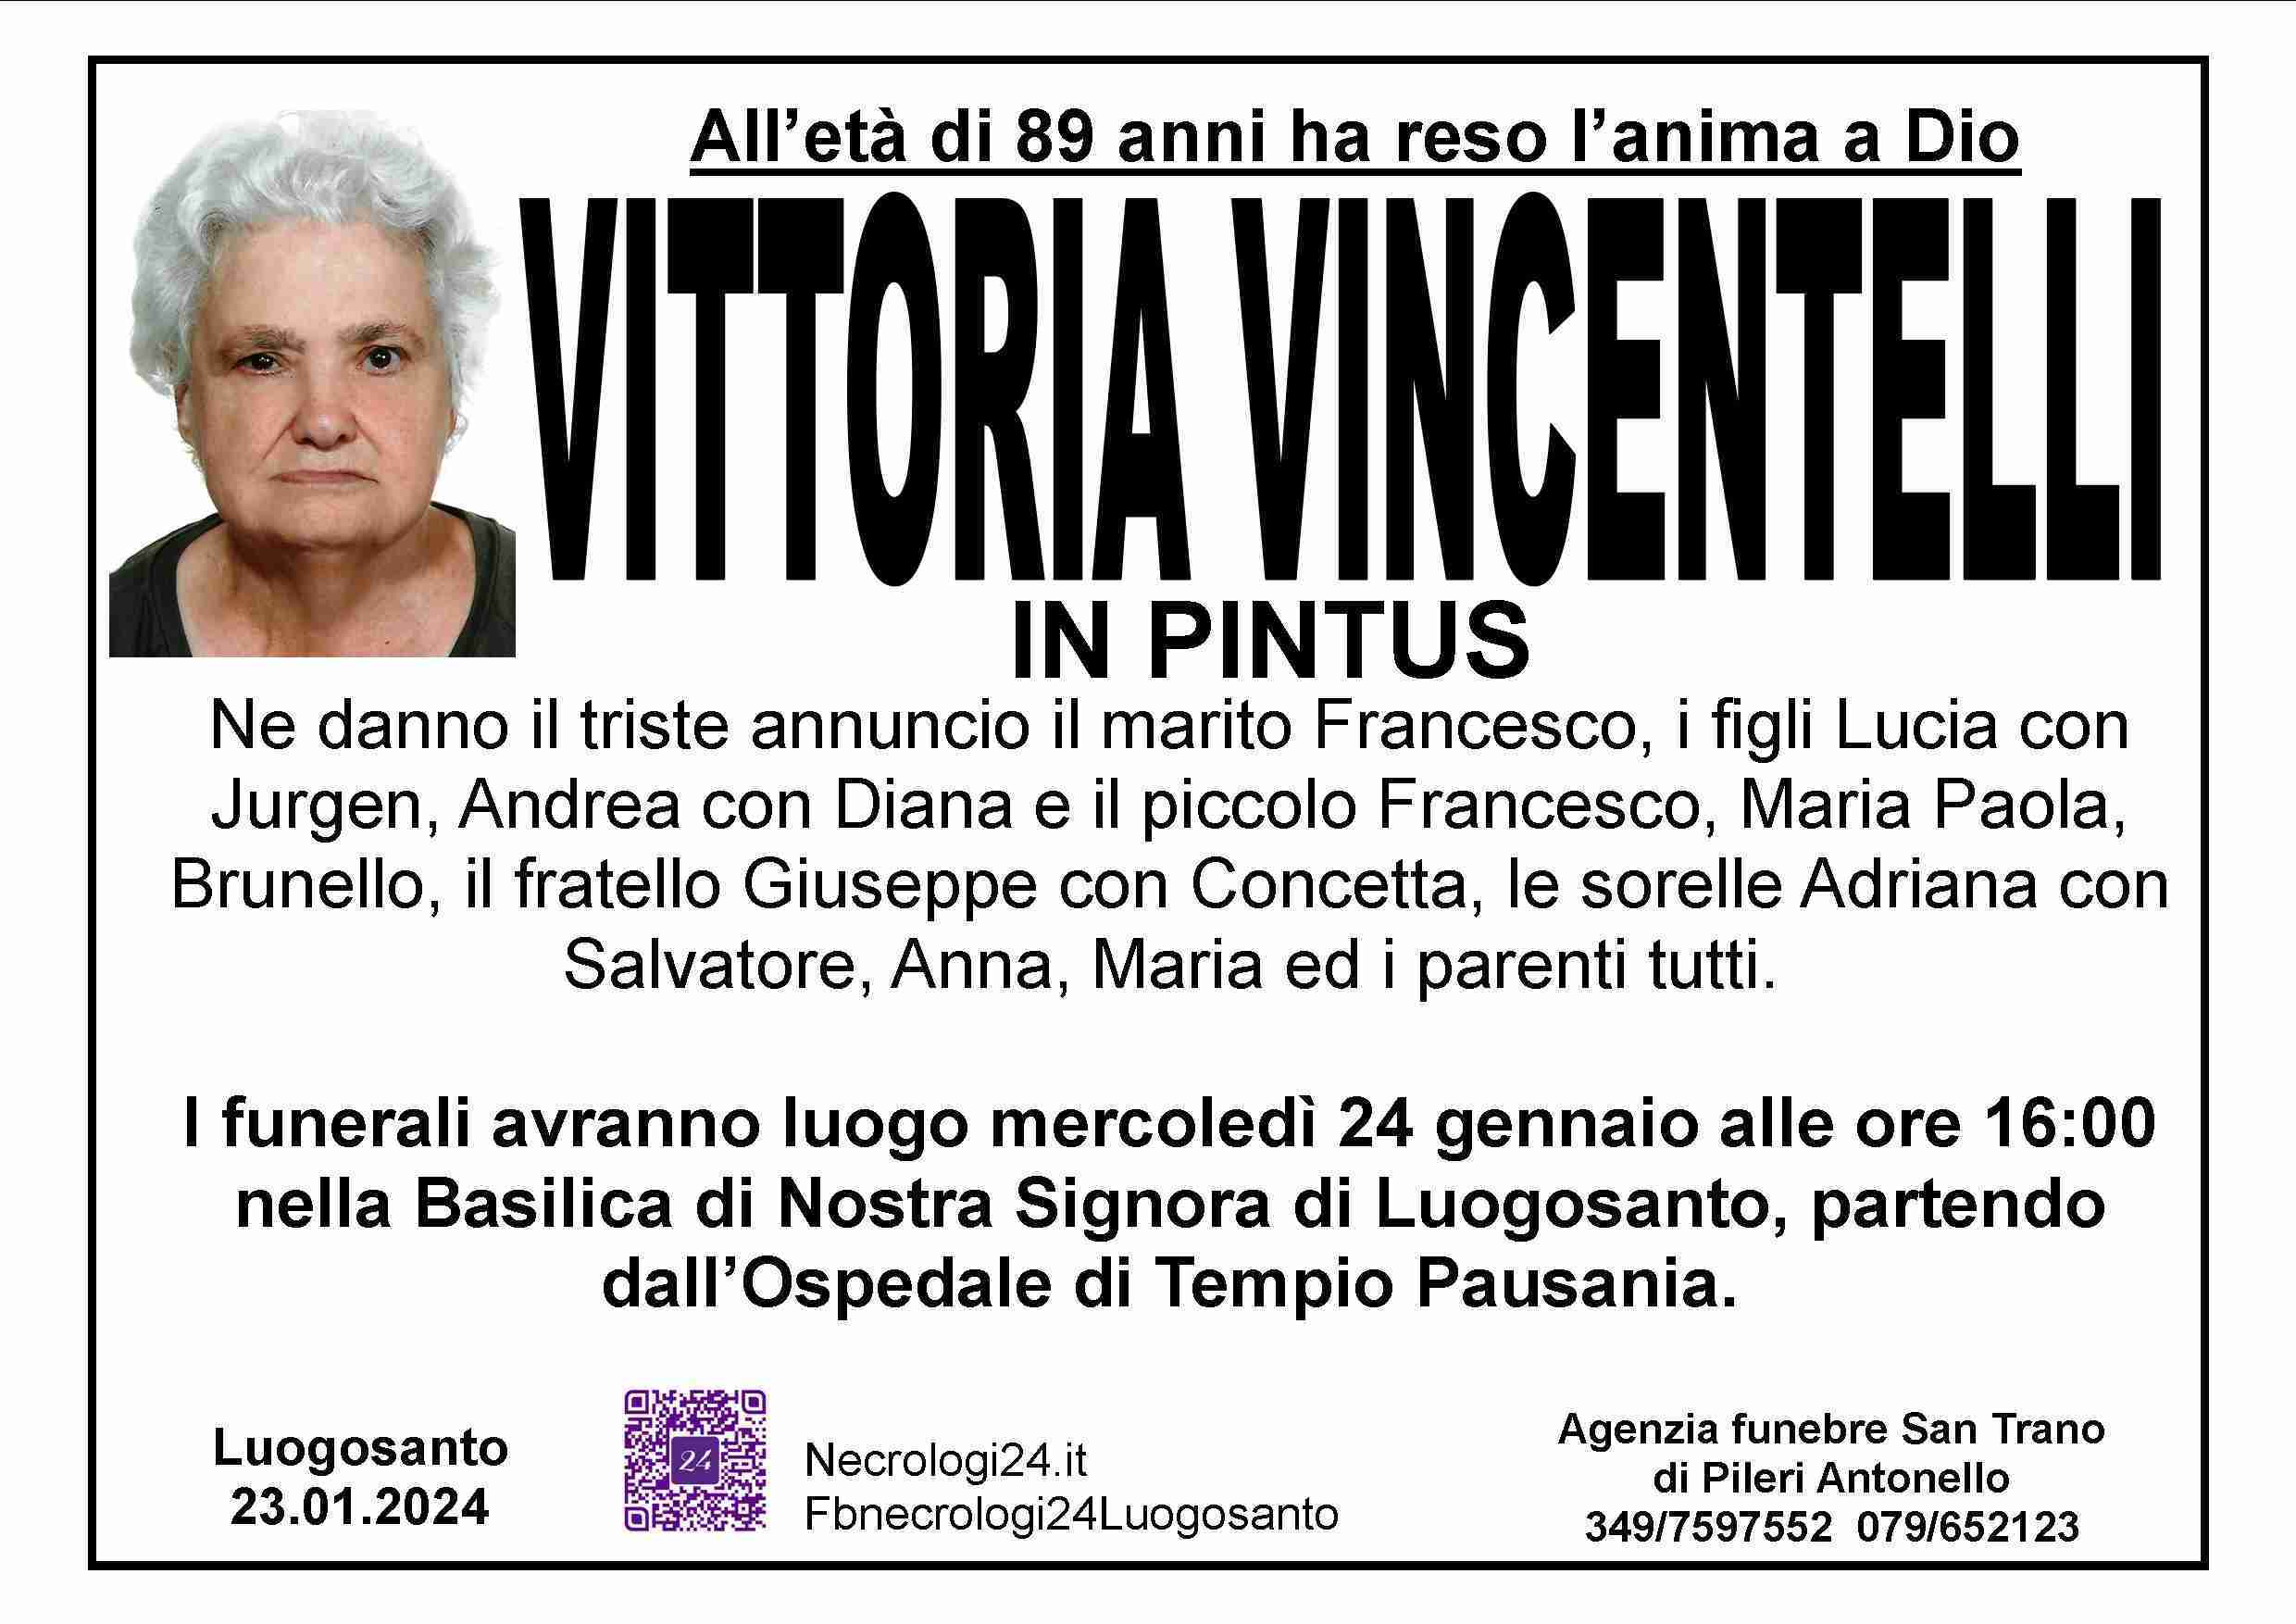 Vittoria Vincentelli